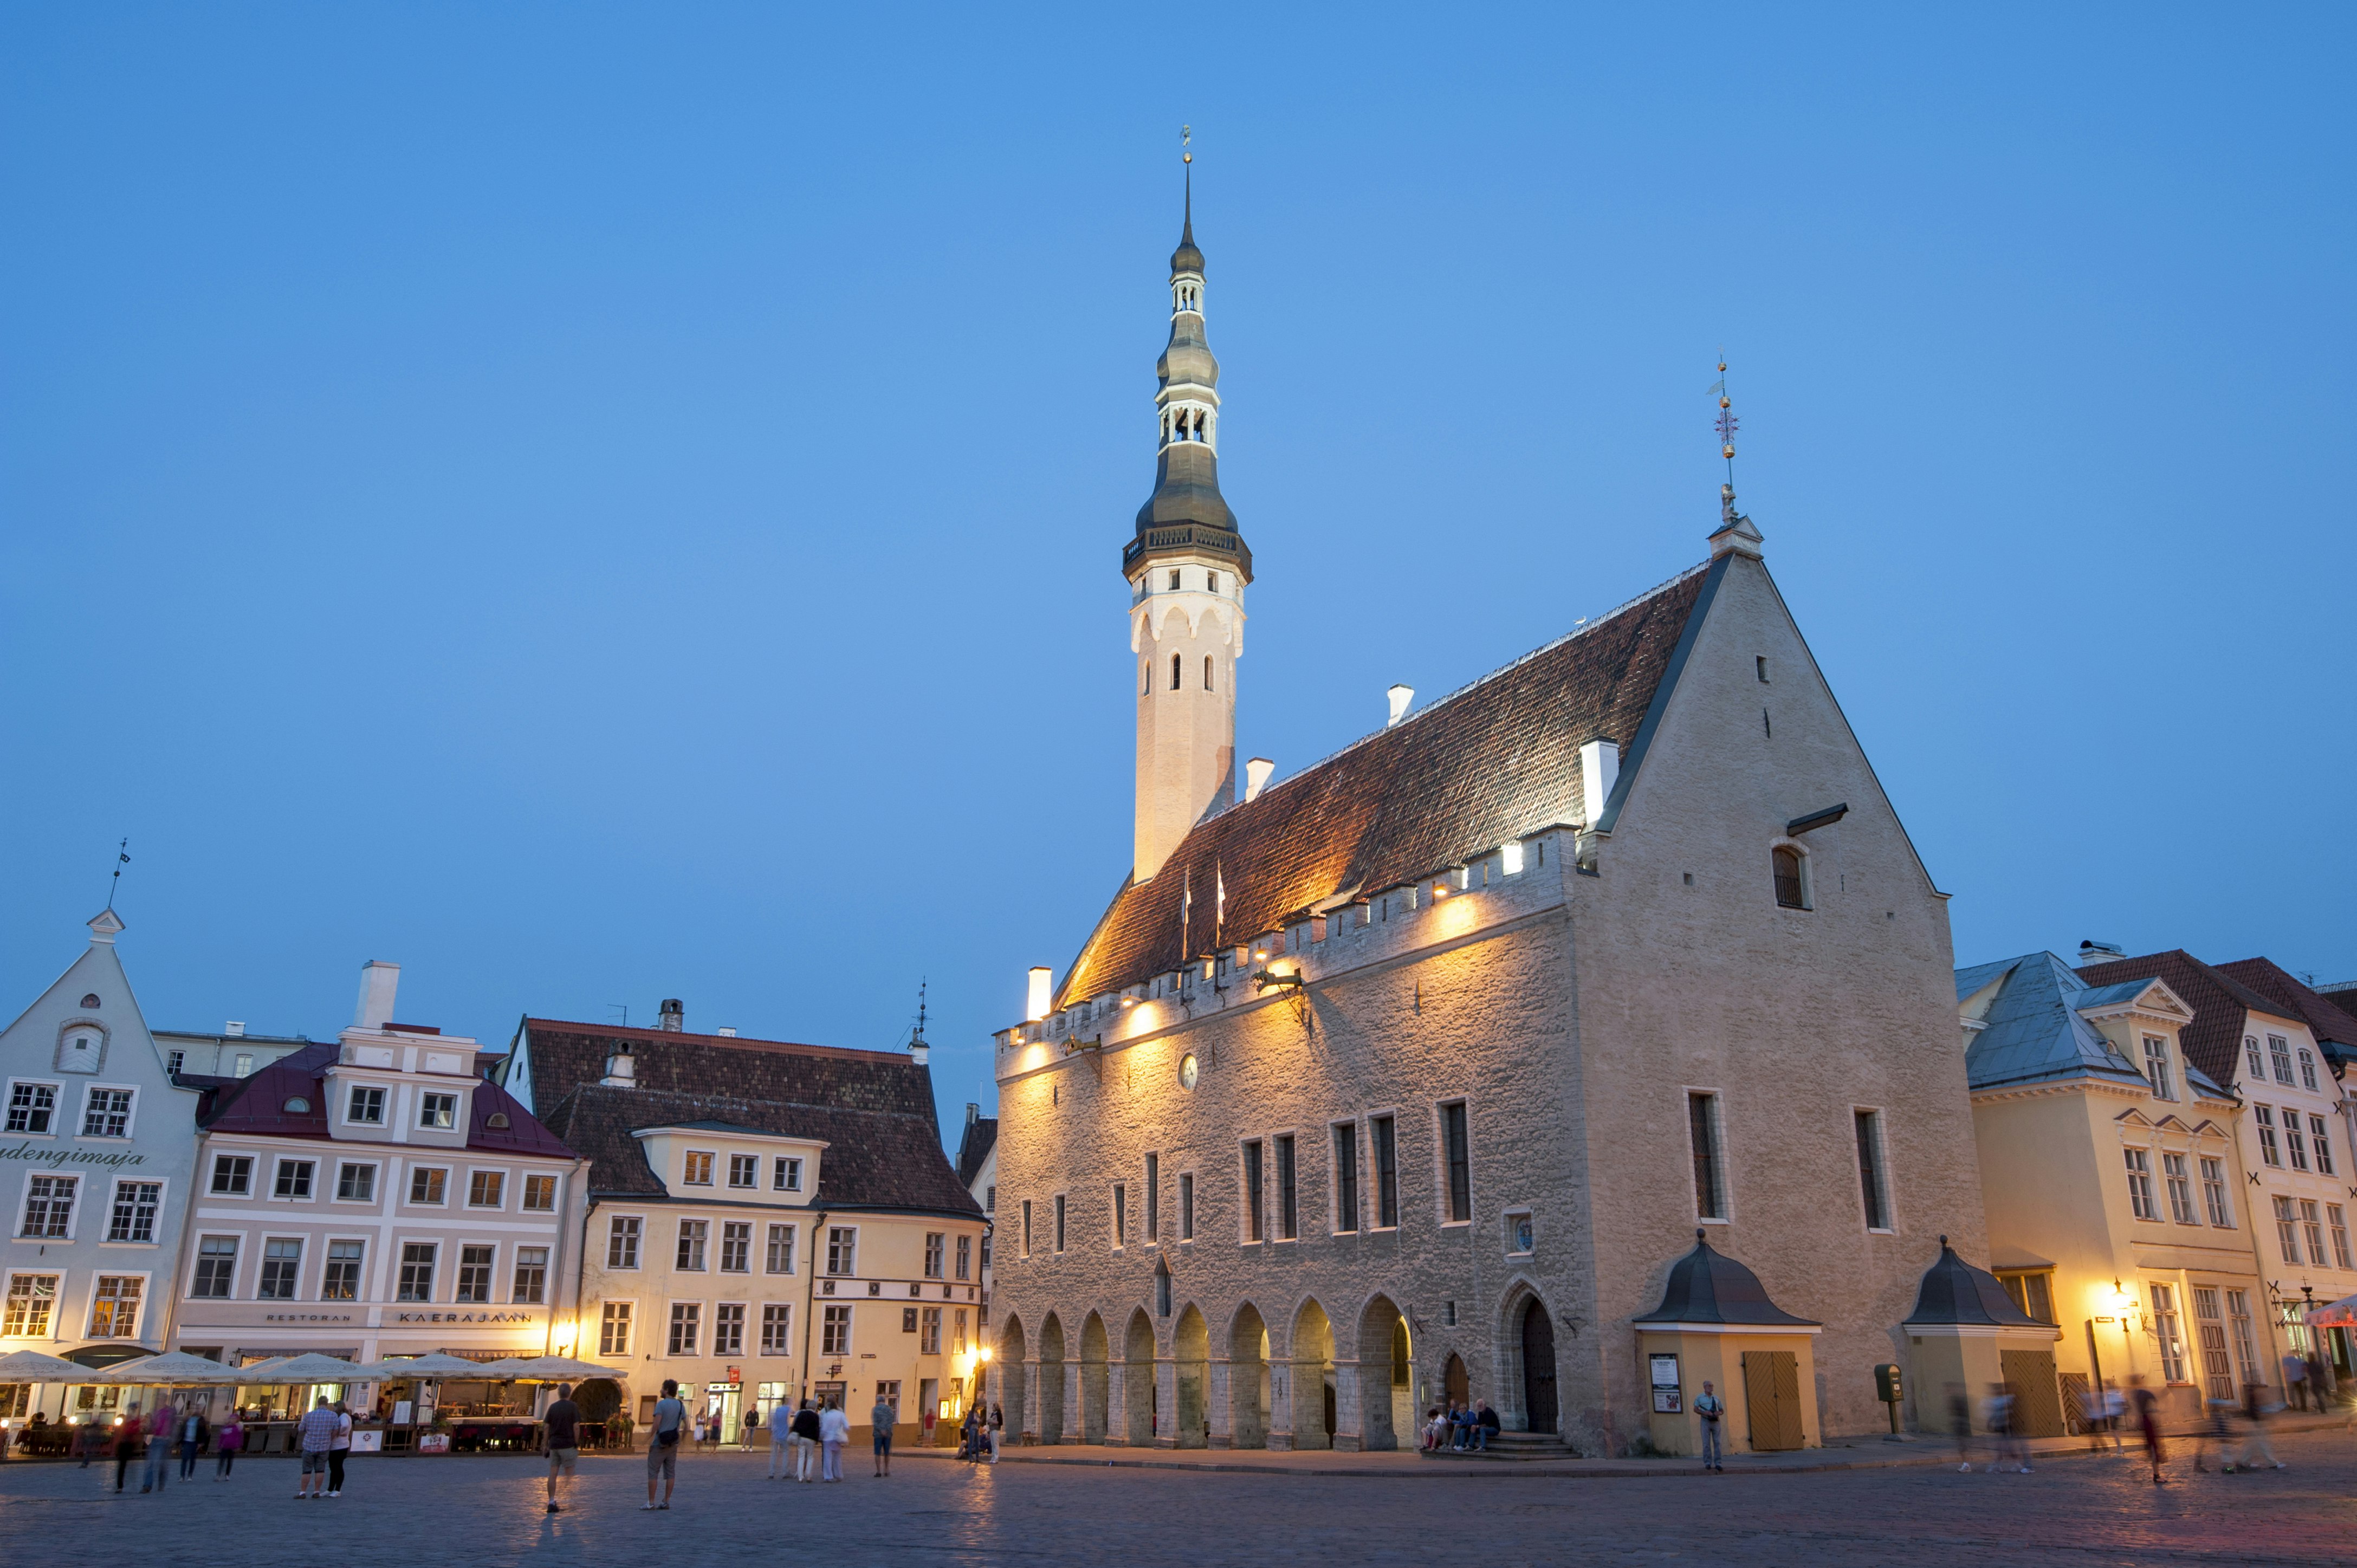 Tallinn Town Hall at dusk